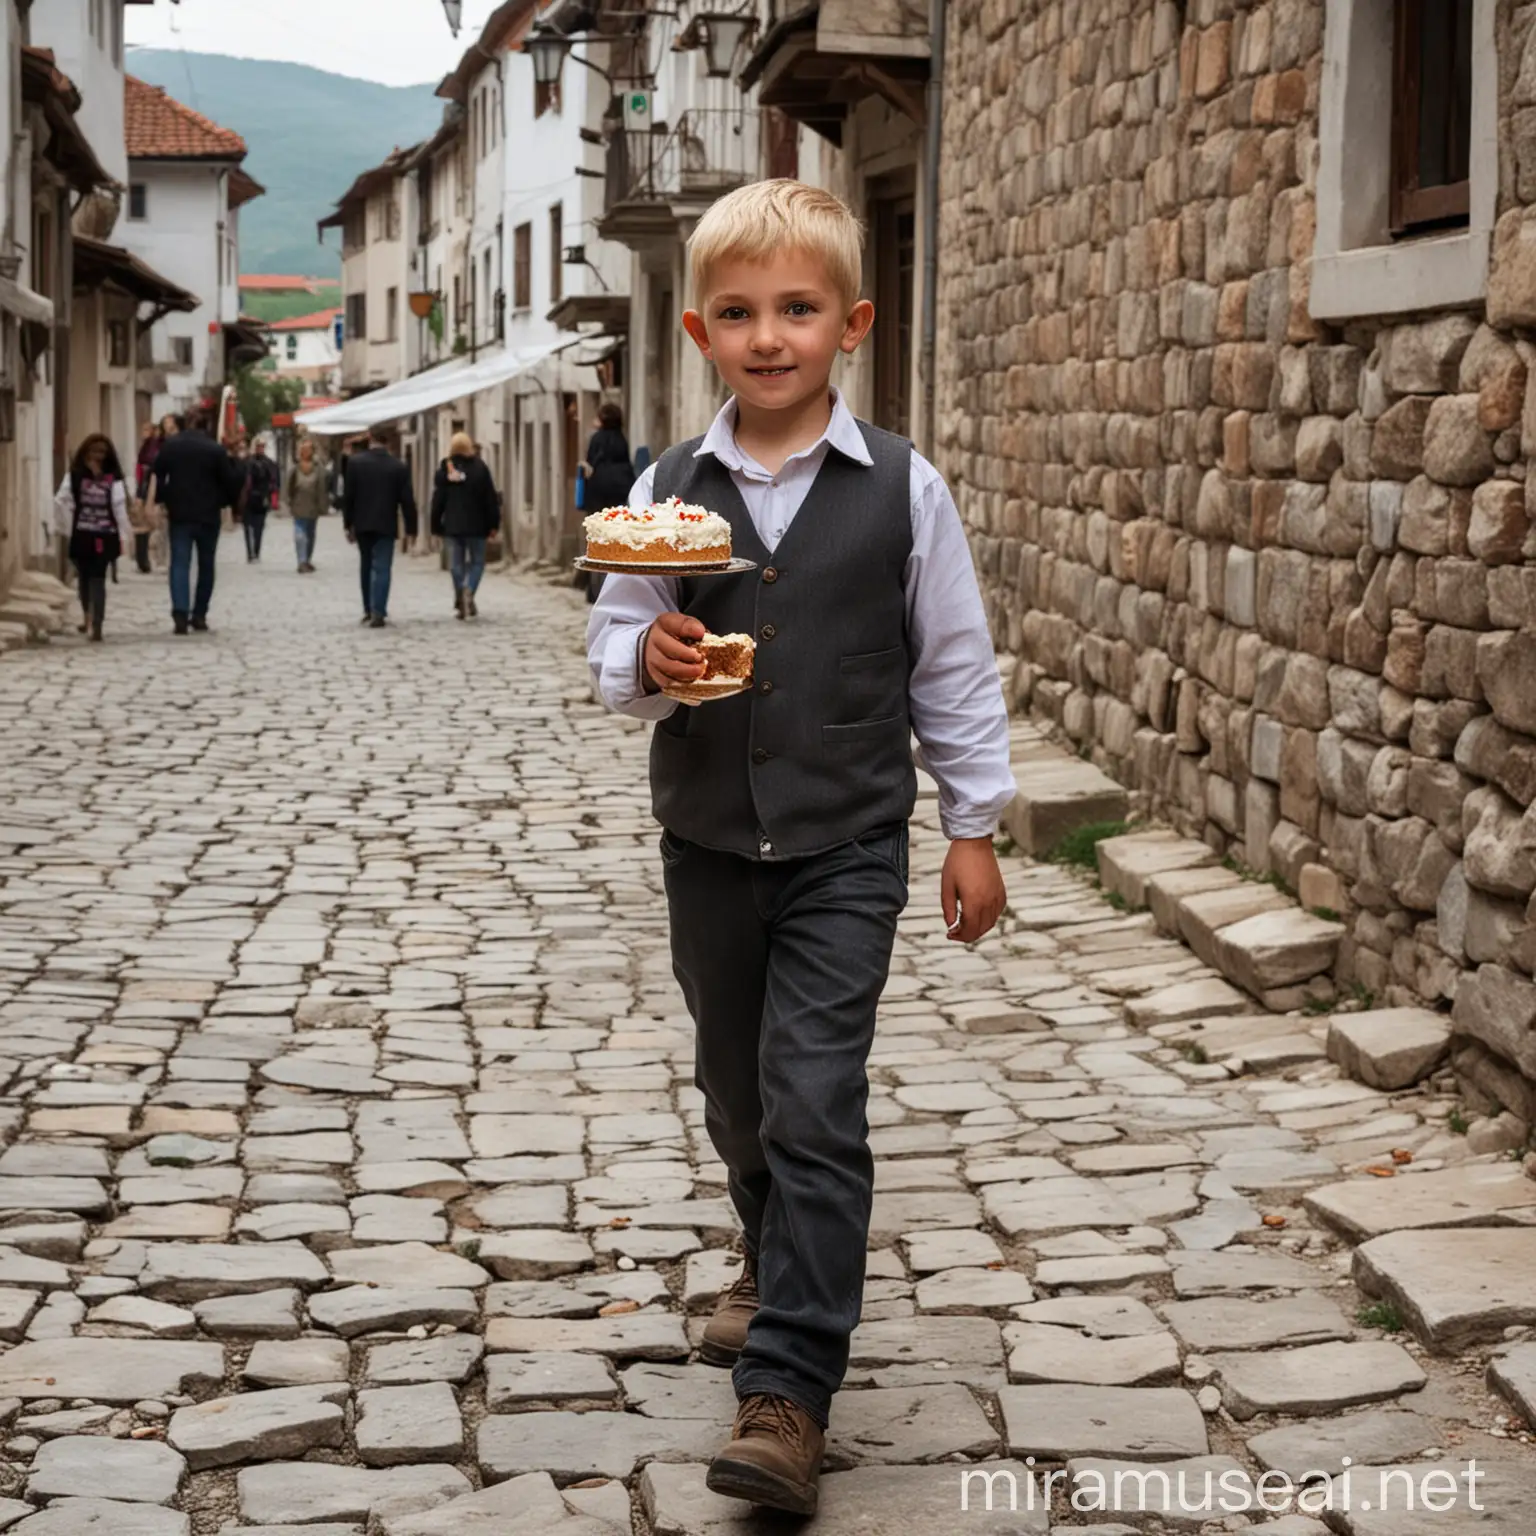 Blonde Boy Walking in Old Prizren City Holding Cake